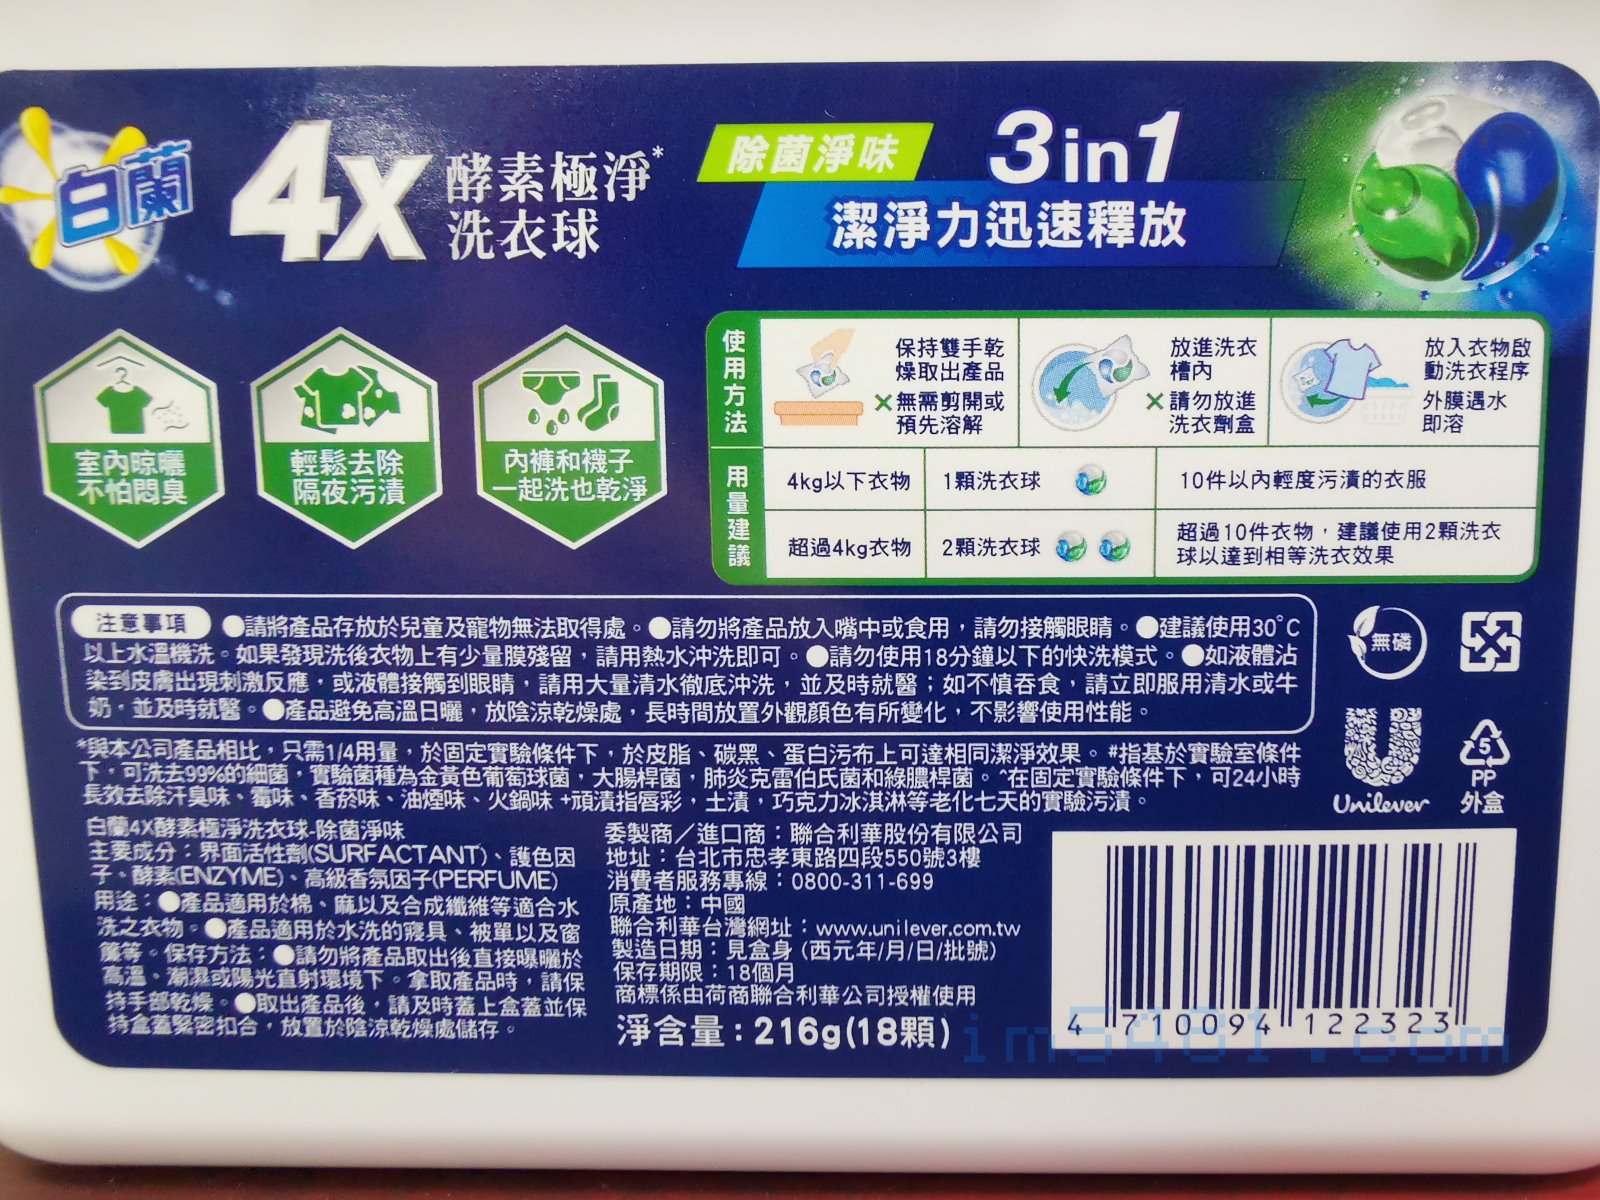 白蘭4X酵素極淨洗衣球除菌淨味背面產品說明